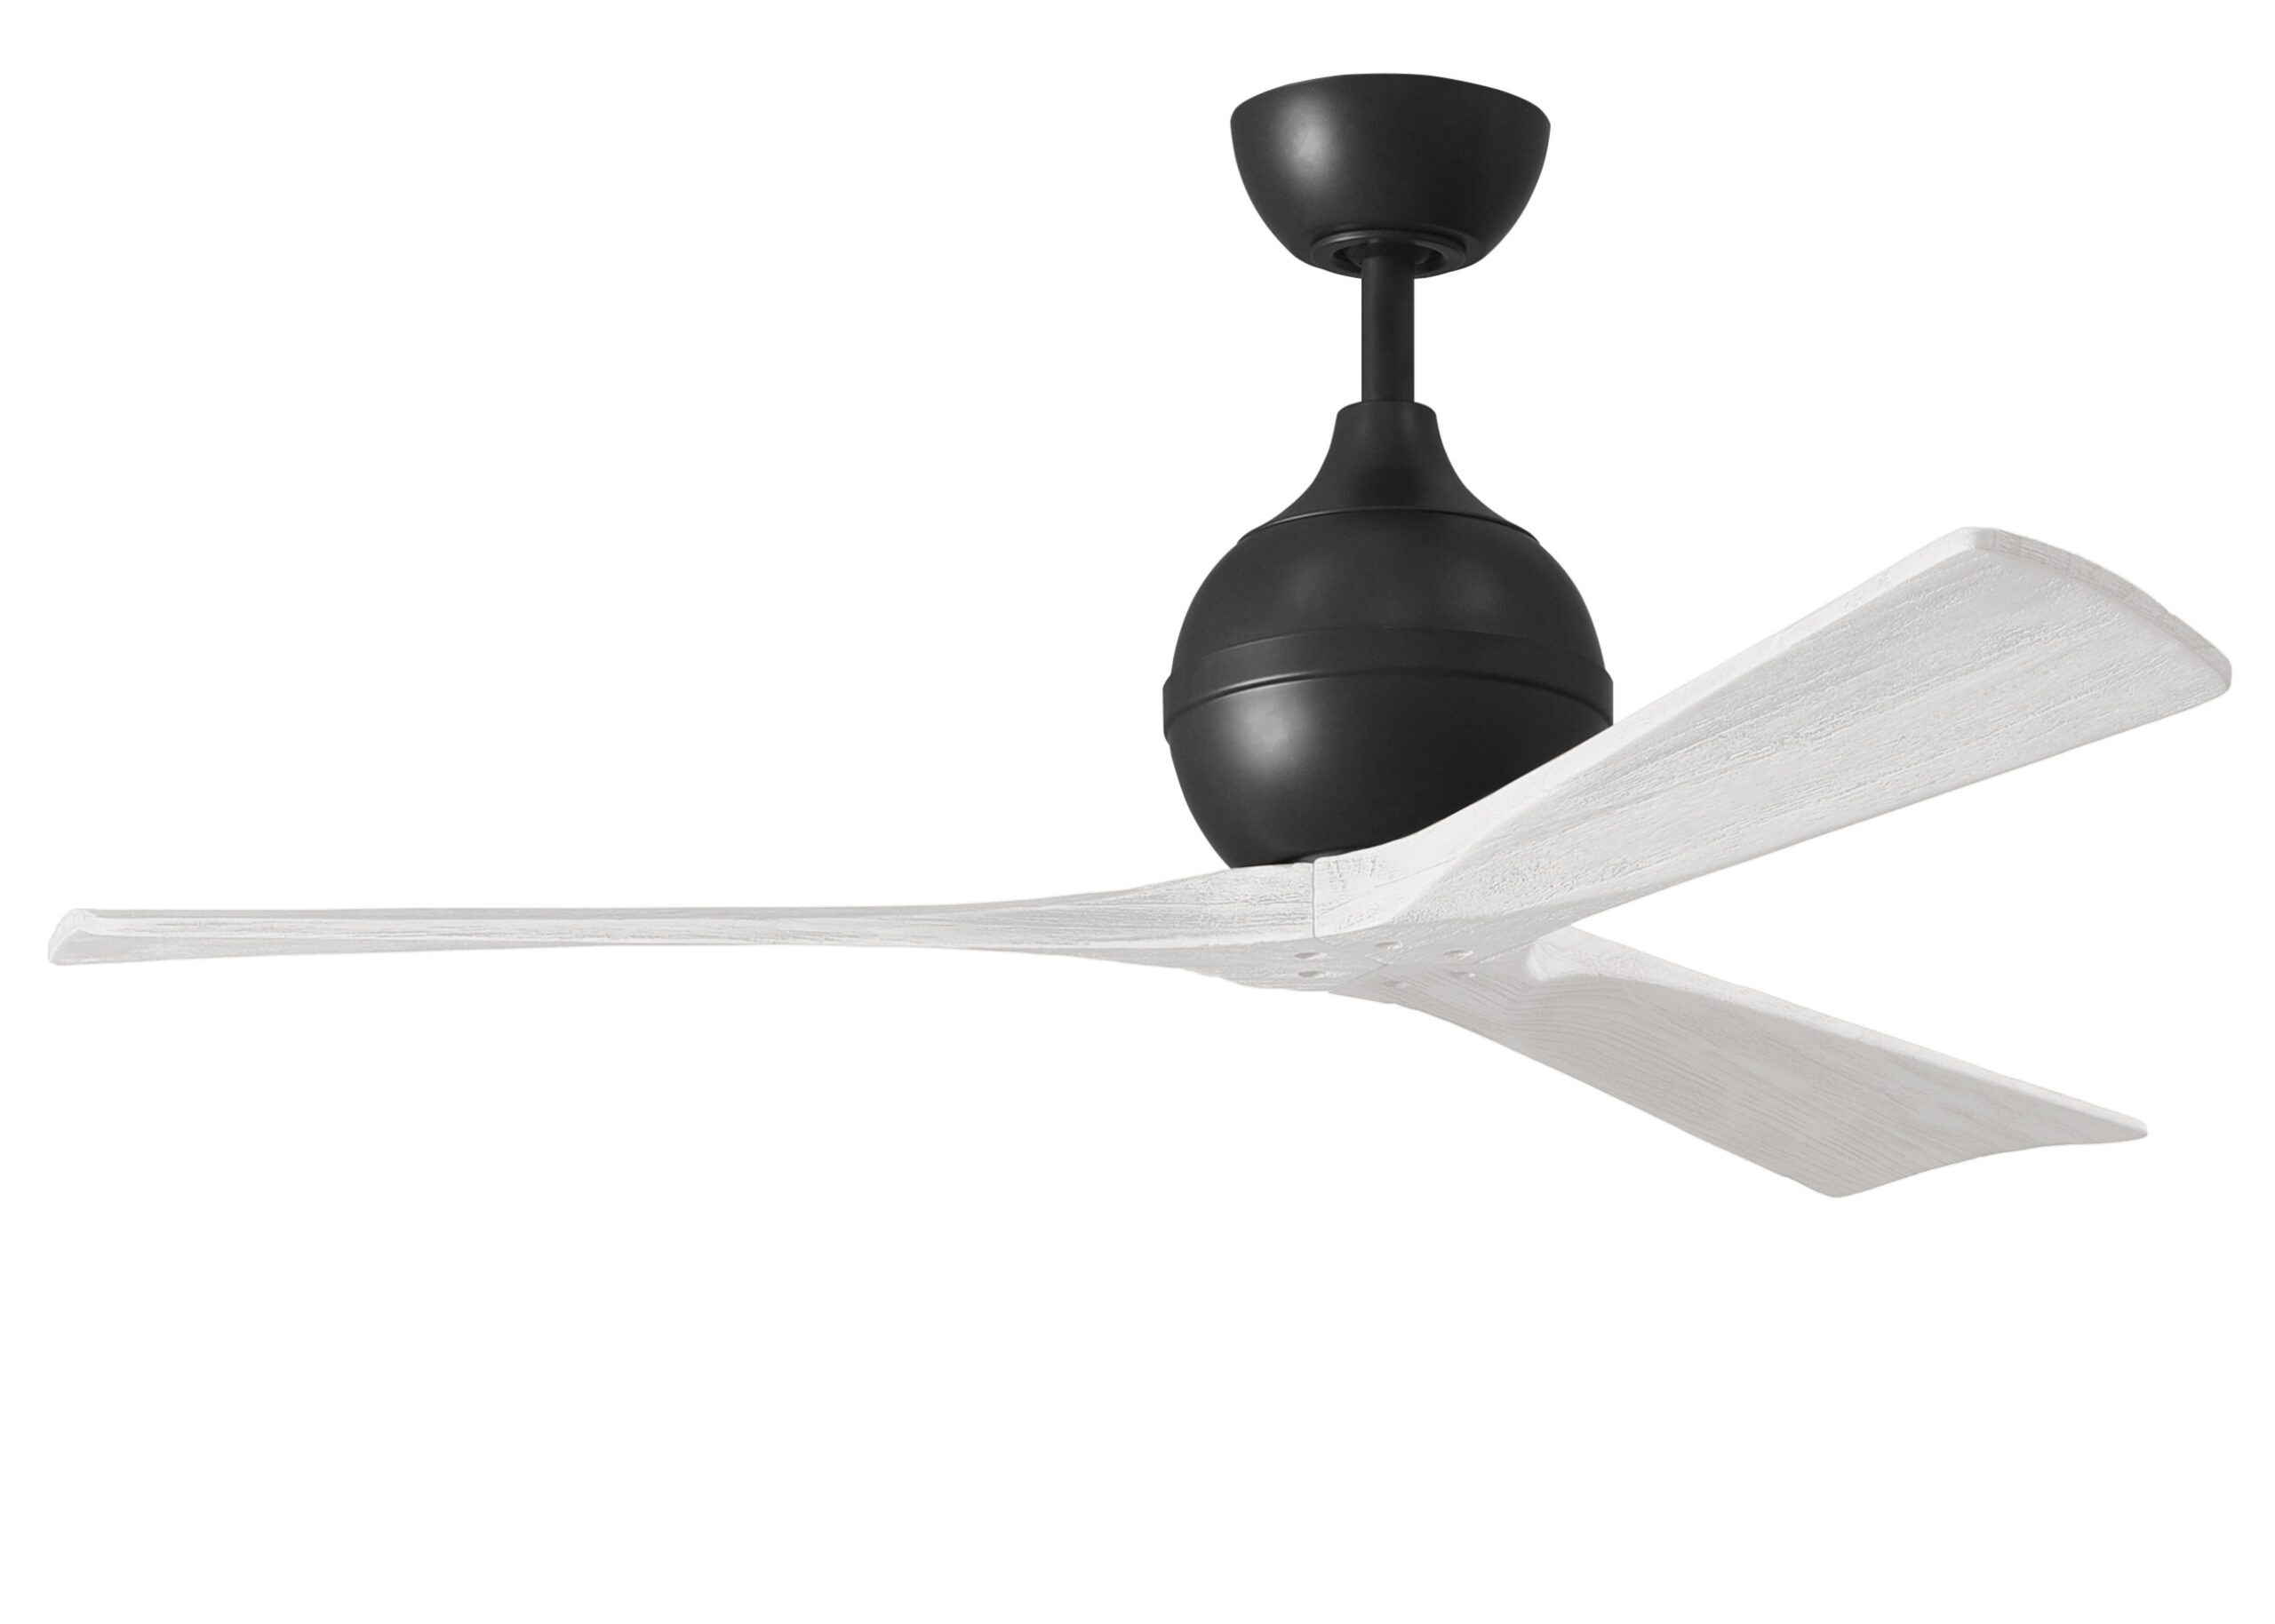 Irene-3 ceiling fan in matte black finish with 52